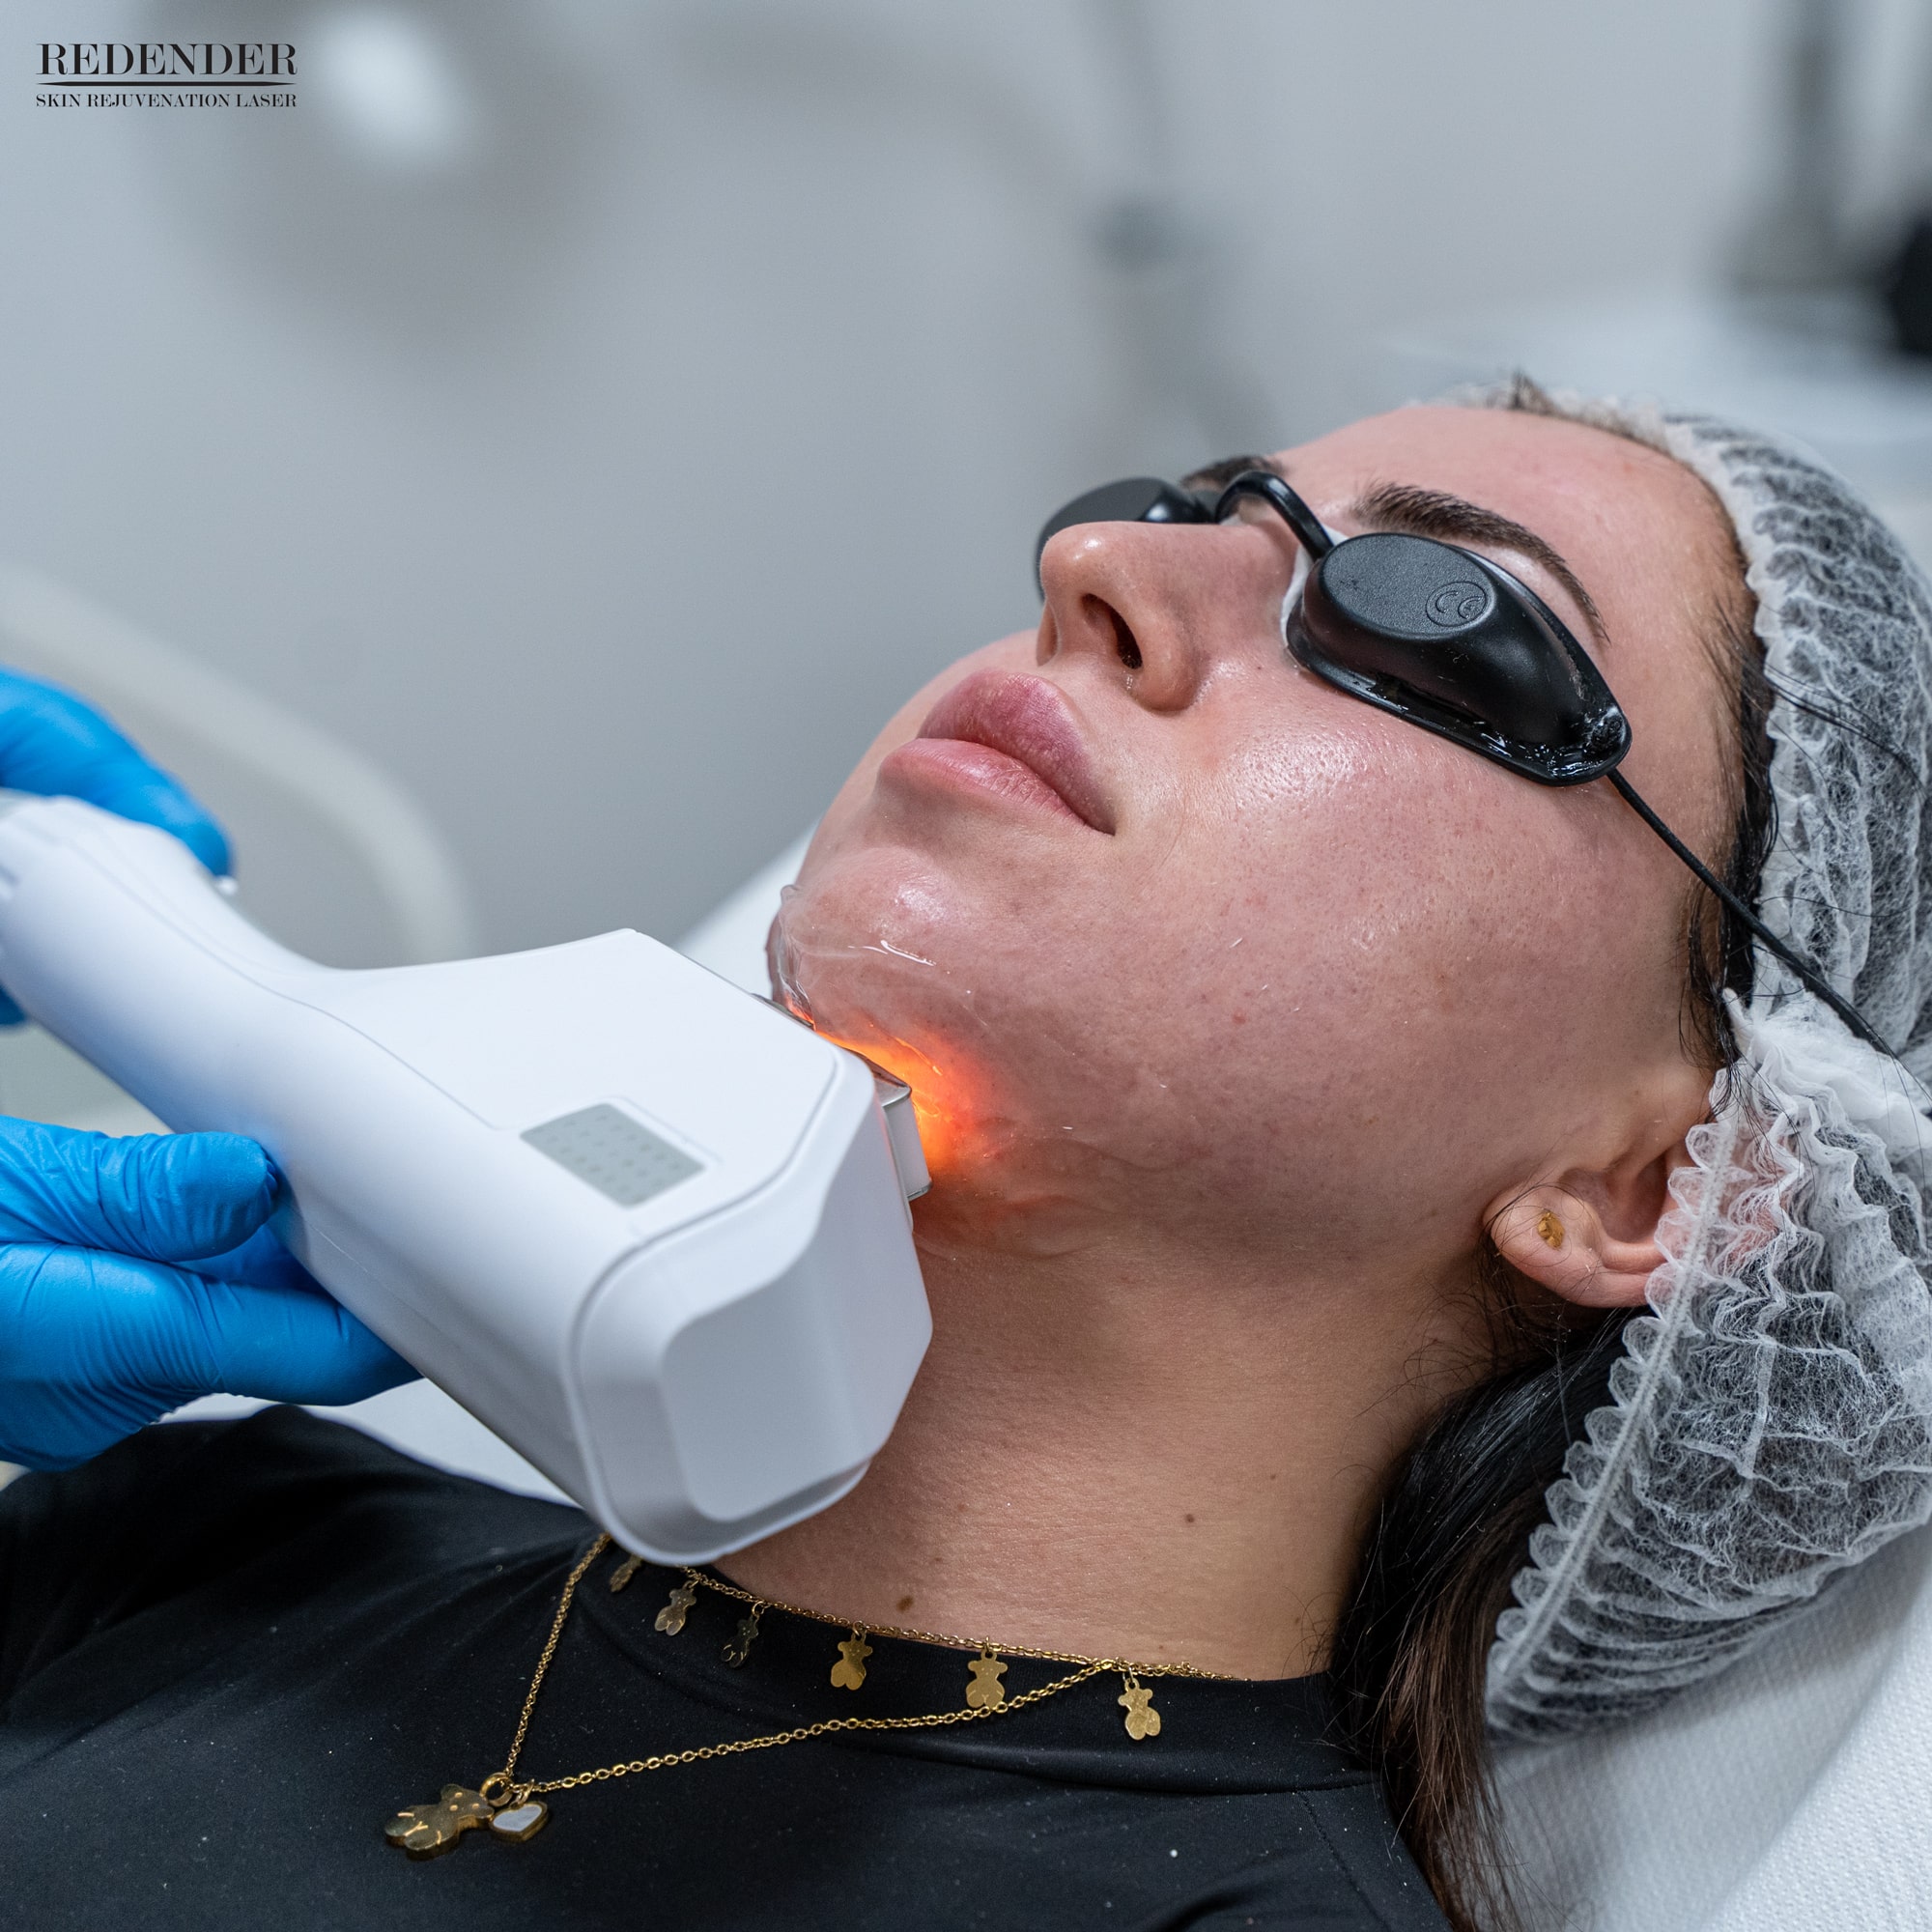 Laserowe odmładzanie skóry można wykonać na obszarze twarzy, szyi, dekoltu i dłoniach